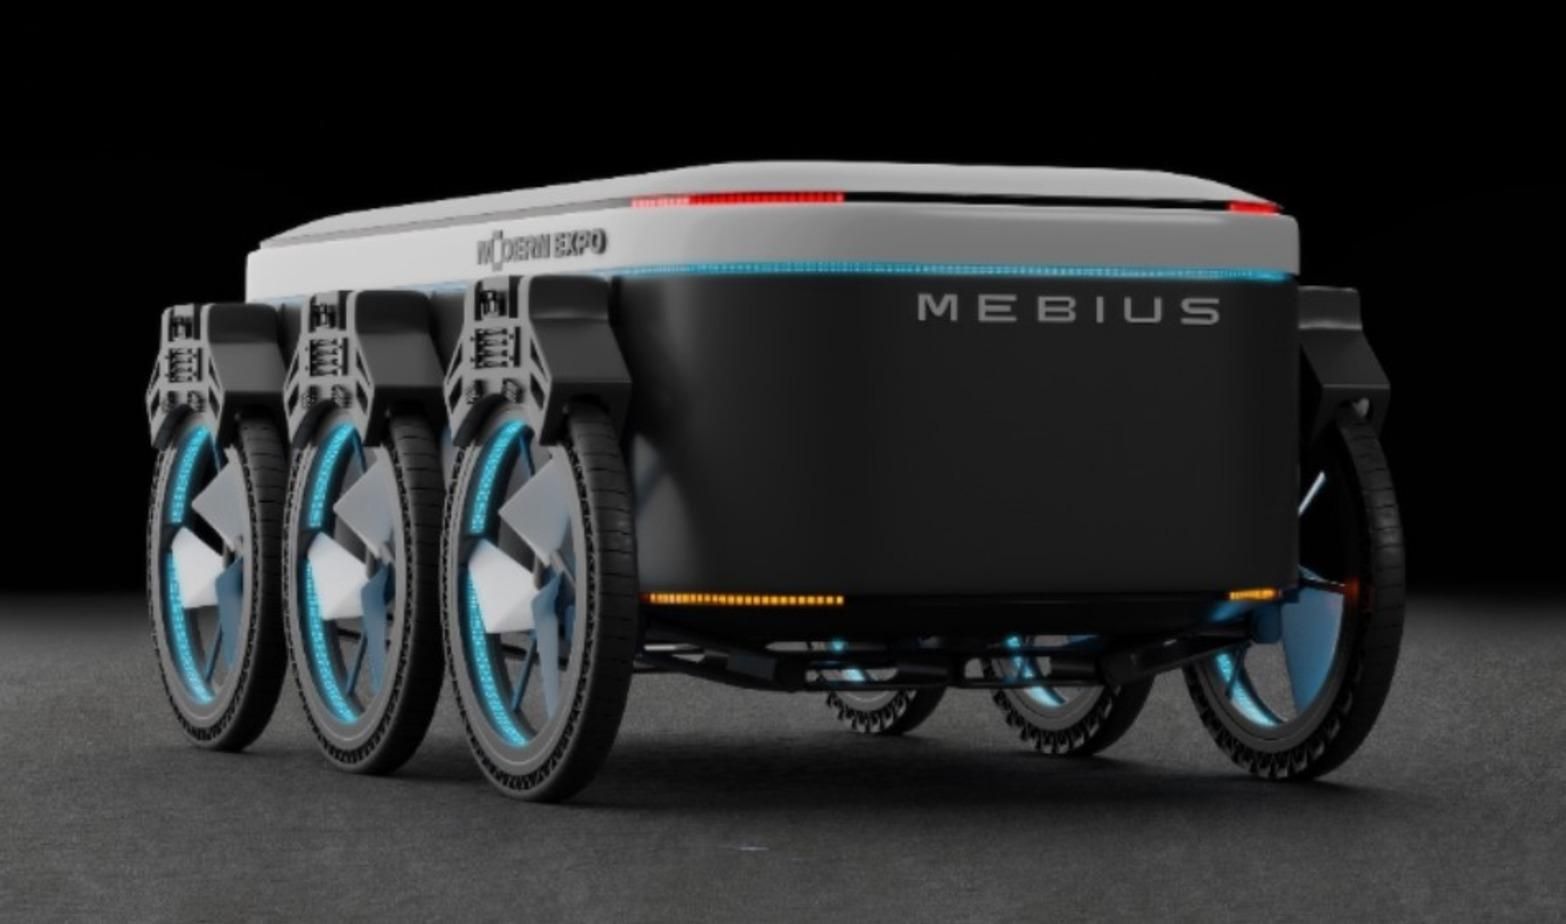 Українці представили концепт робота-кур'єра Mebius: відео